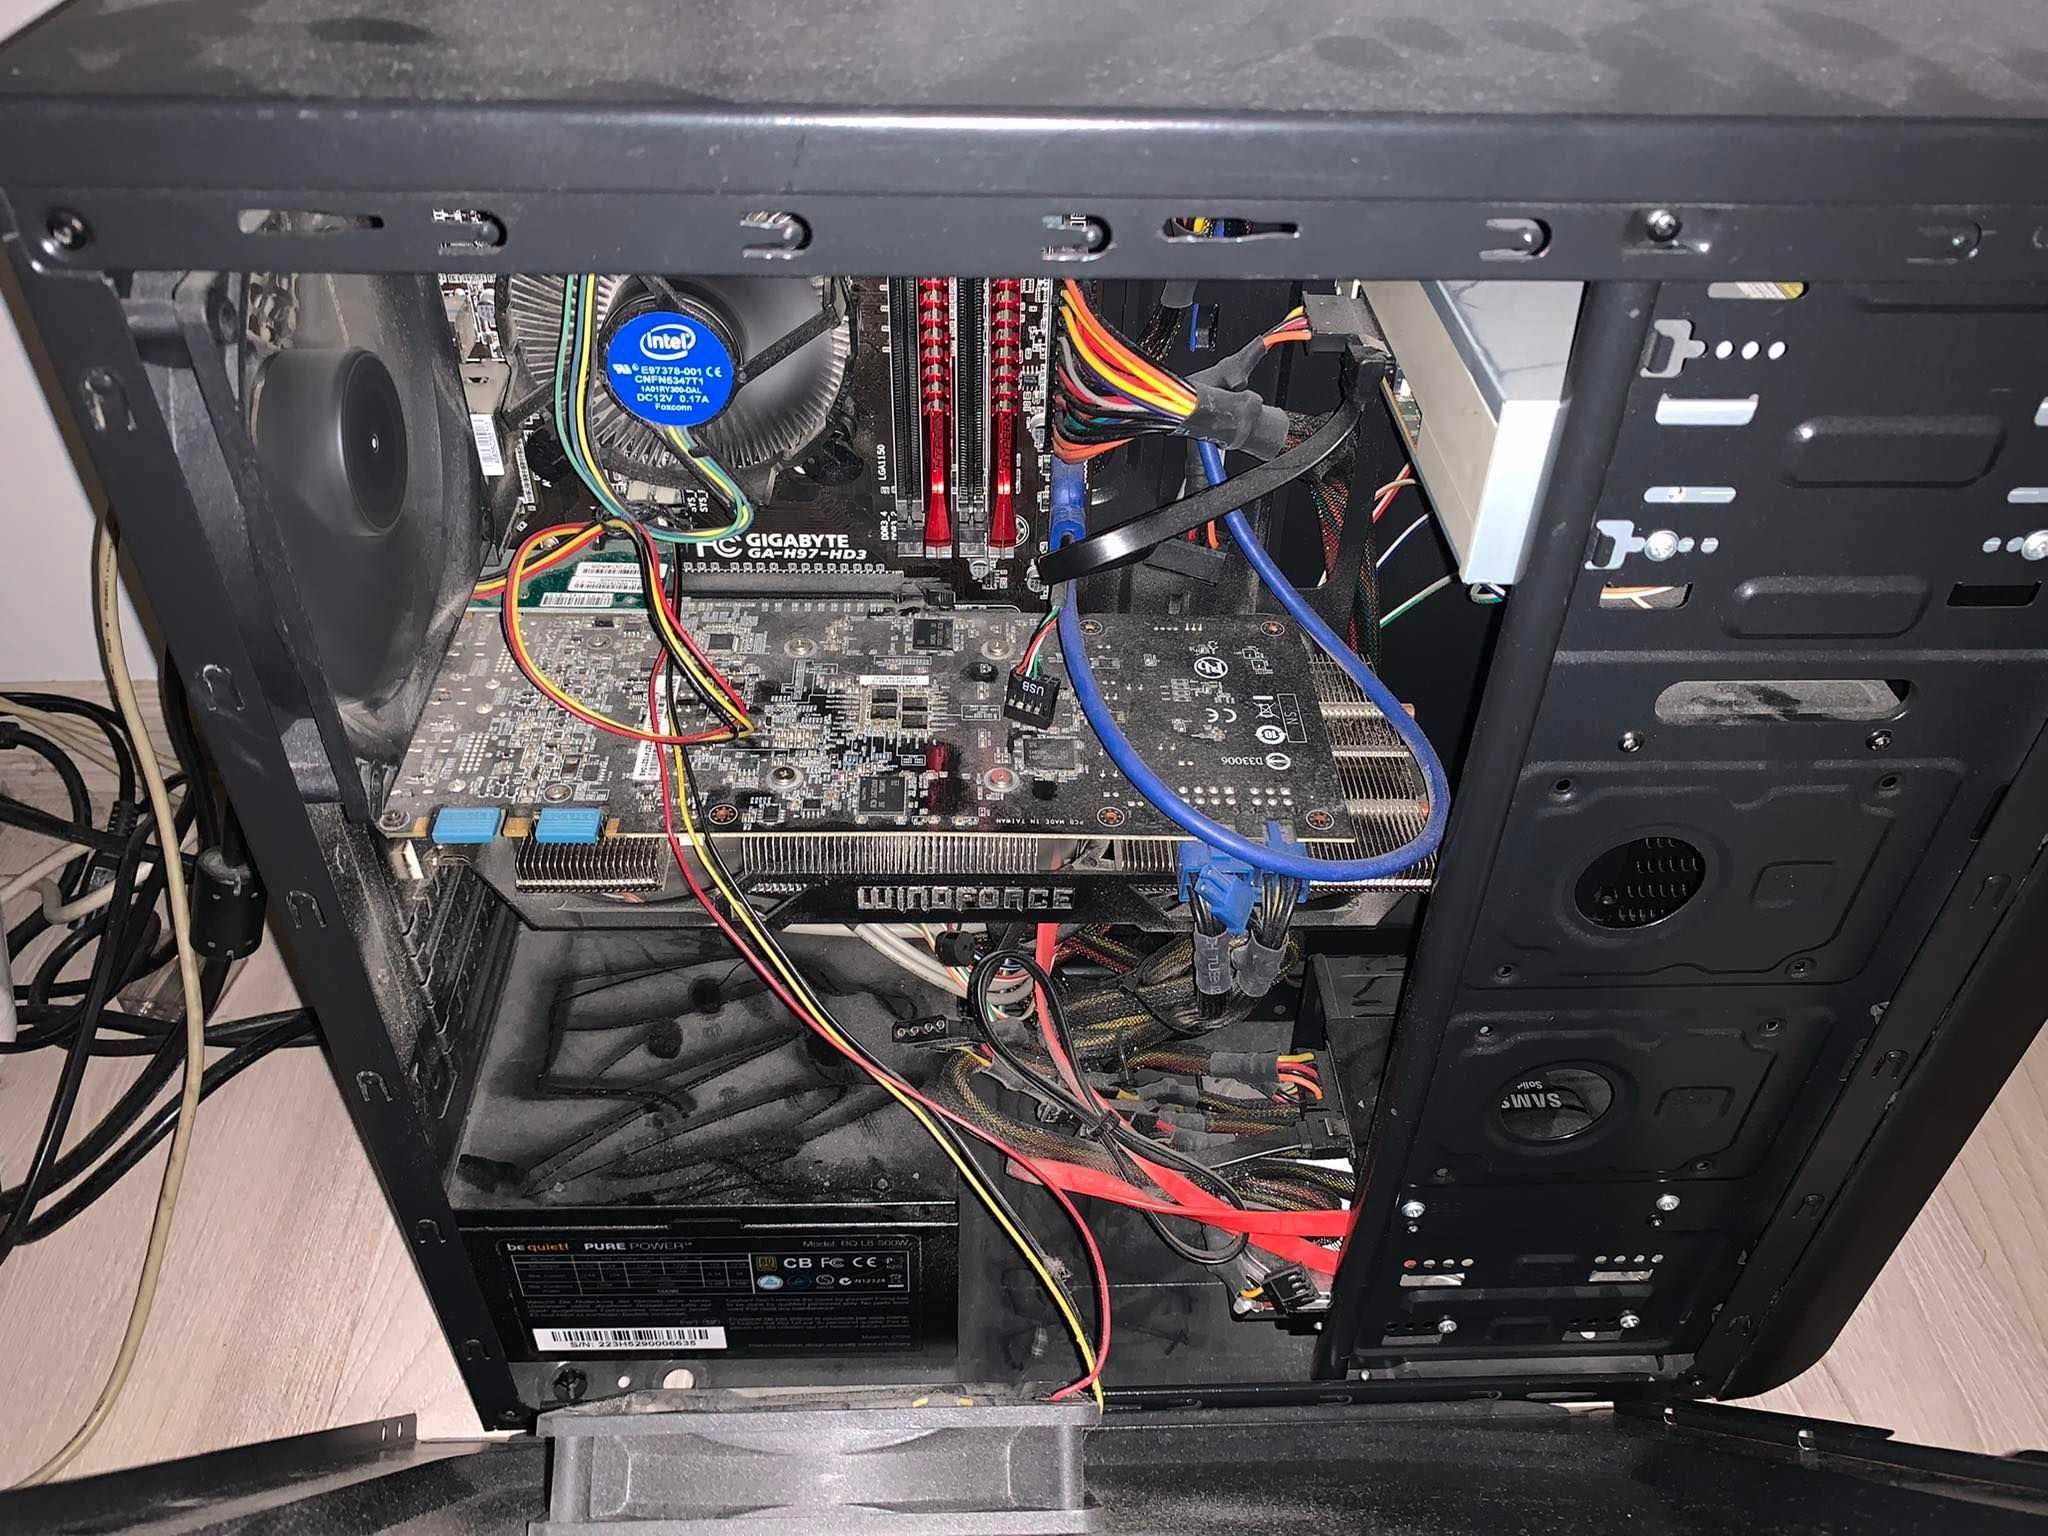 Komputer + Benq 24", i54460 3,2 Ghz, 8GB RAM, Karta GTX 970, SSD 120GB